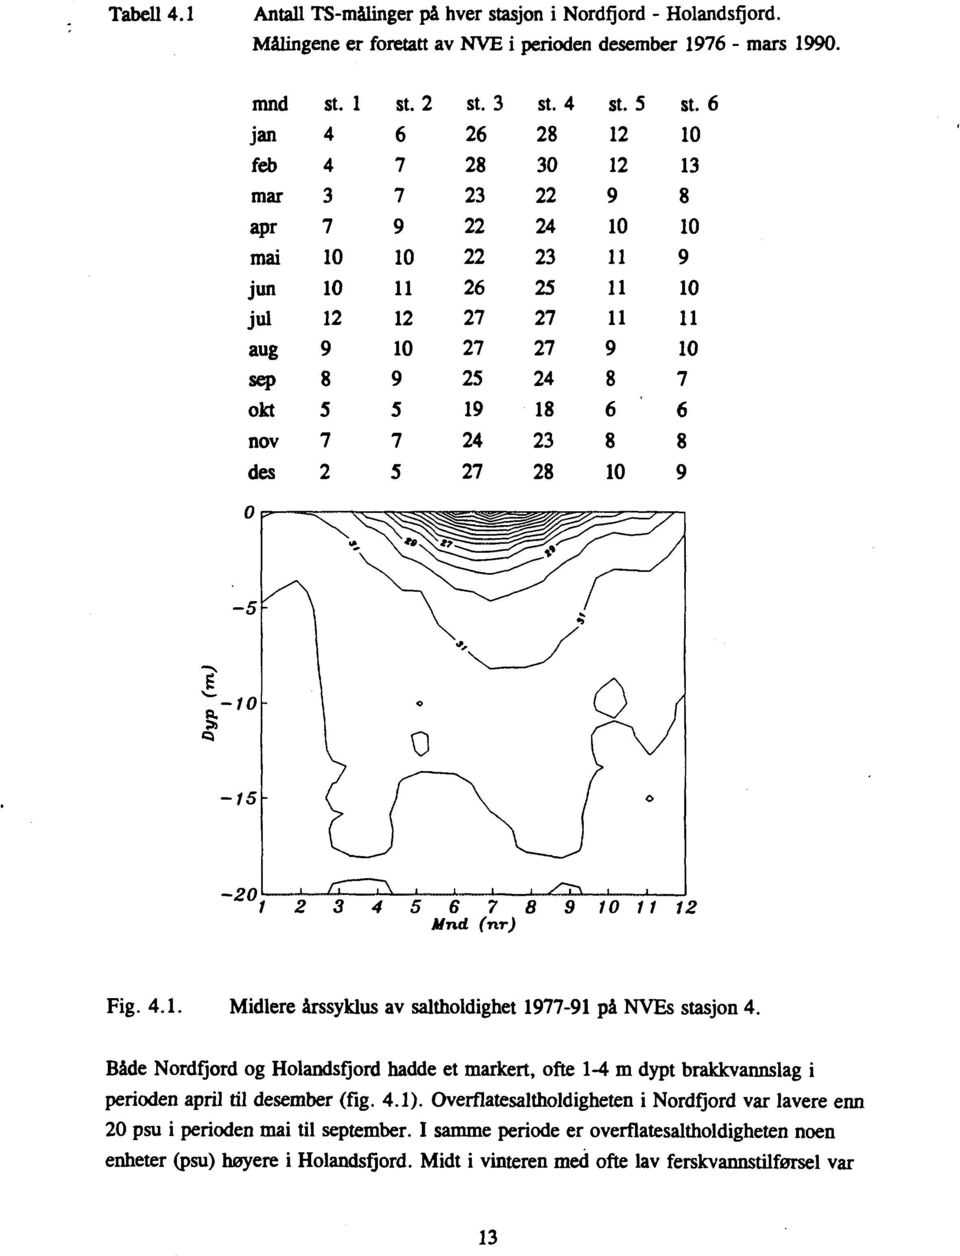 6 10 13 8 10 9 10 11 10 7 6 8 9-10 S; Cl -15-20 5 6 7 8 Mnd (nr) 9 10 11 12 Fig. 4.1. Midlere årssyklus av saltholdighet 1977-91 på NVEs stasjon 4.